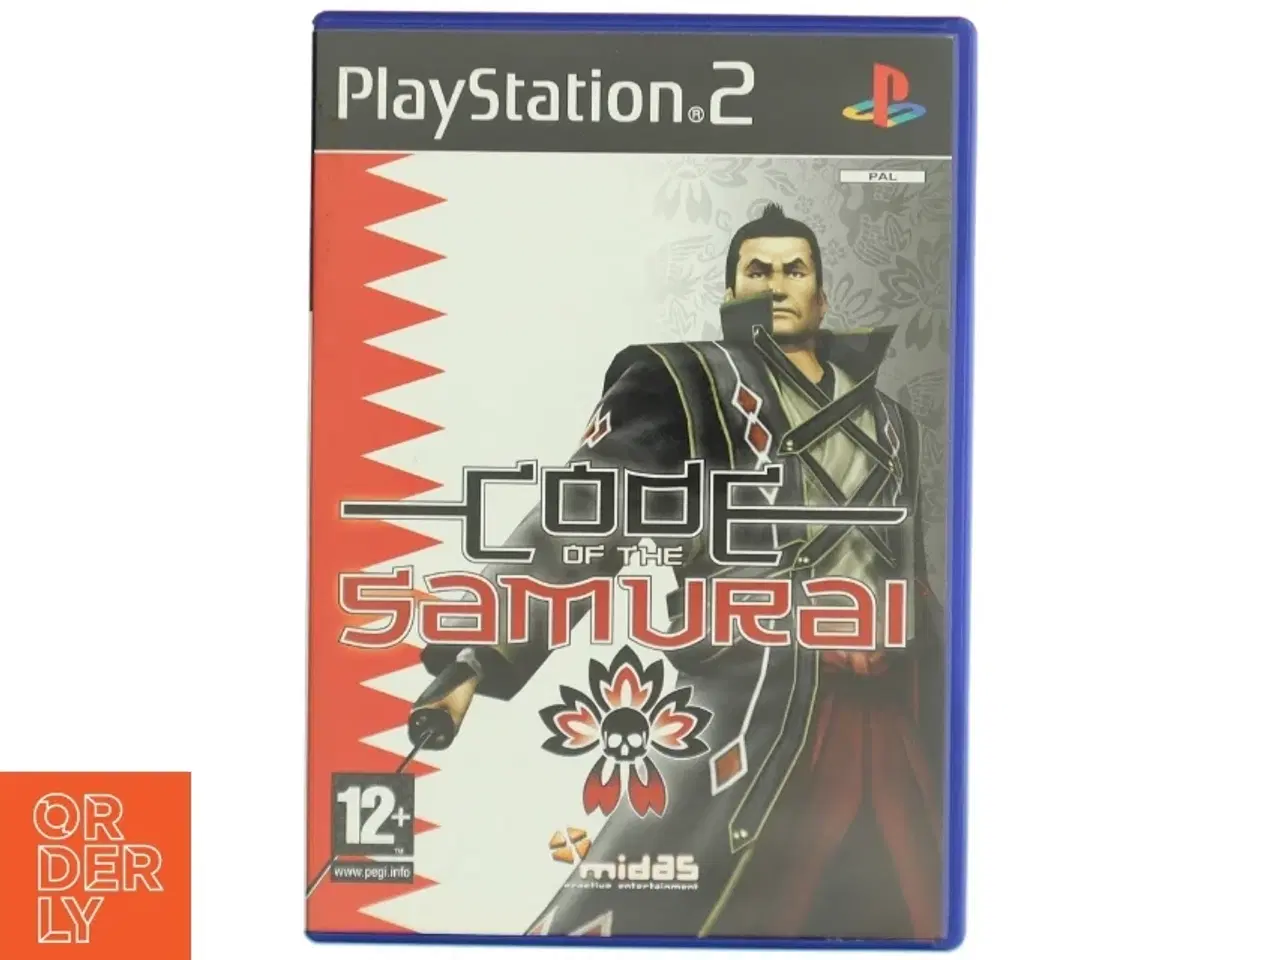 Billede 1 - Playstation 2 spil 'Code of the Samurai'